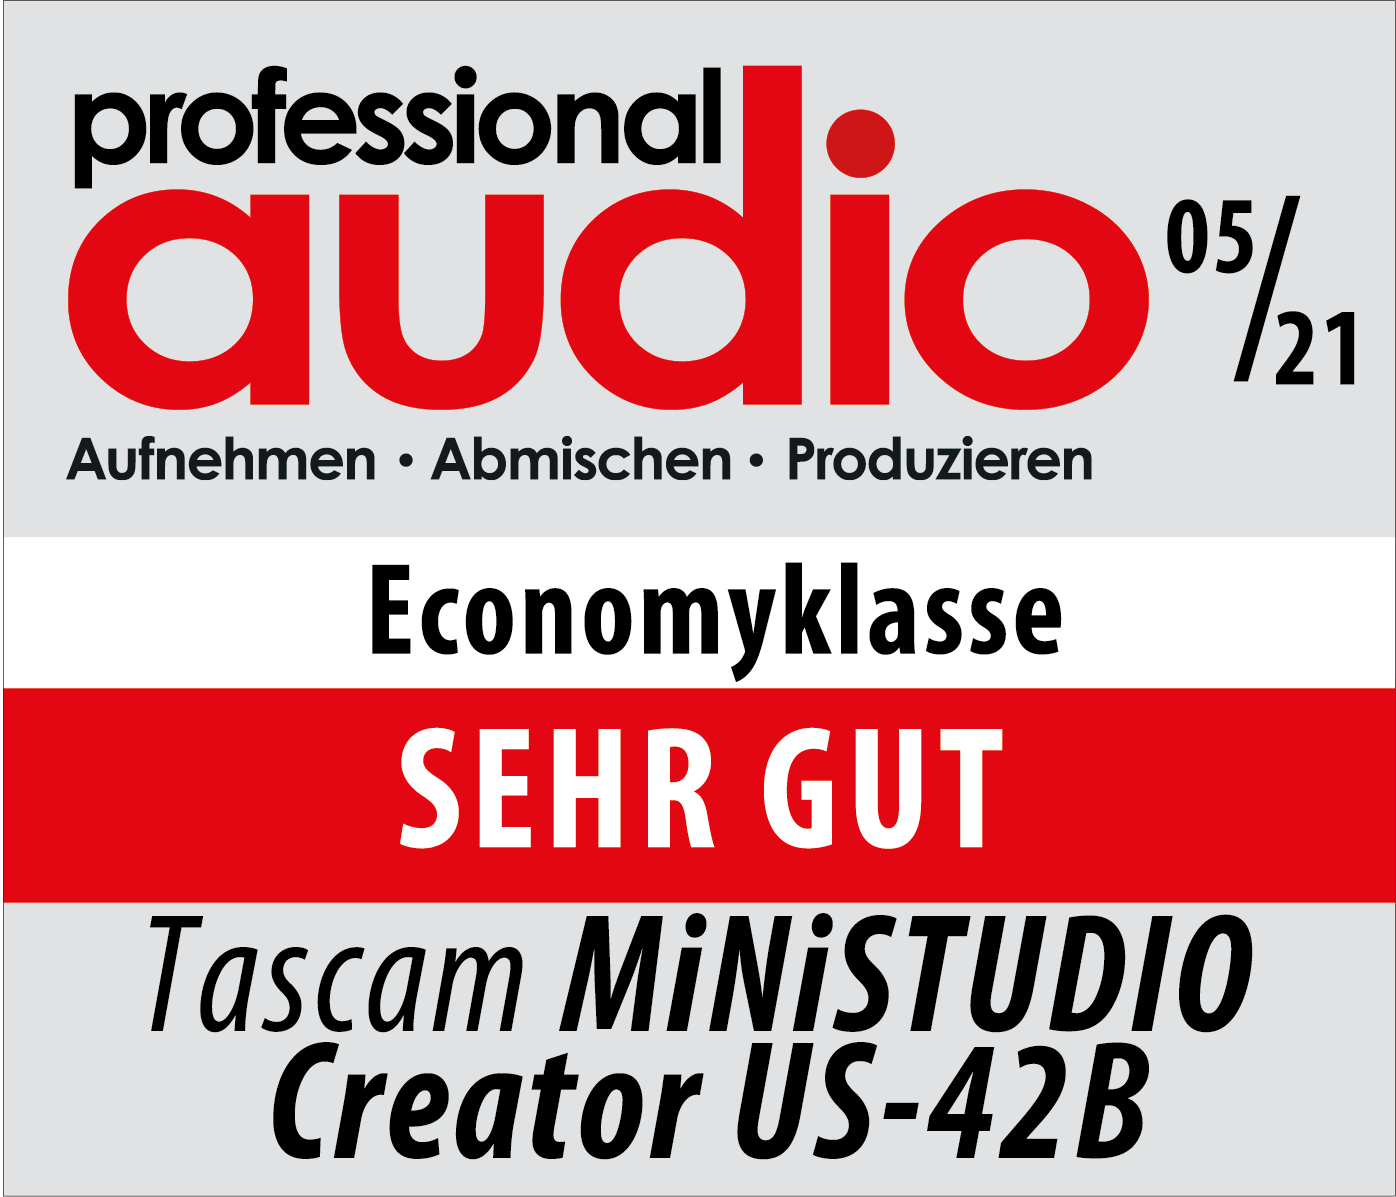 Professional Audio zeichnet das Tascam MiNiSTUDIO US-42B mit dem Prädikat 'SEHR GUT' aus